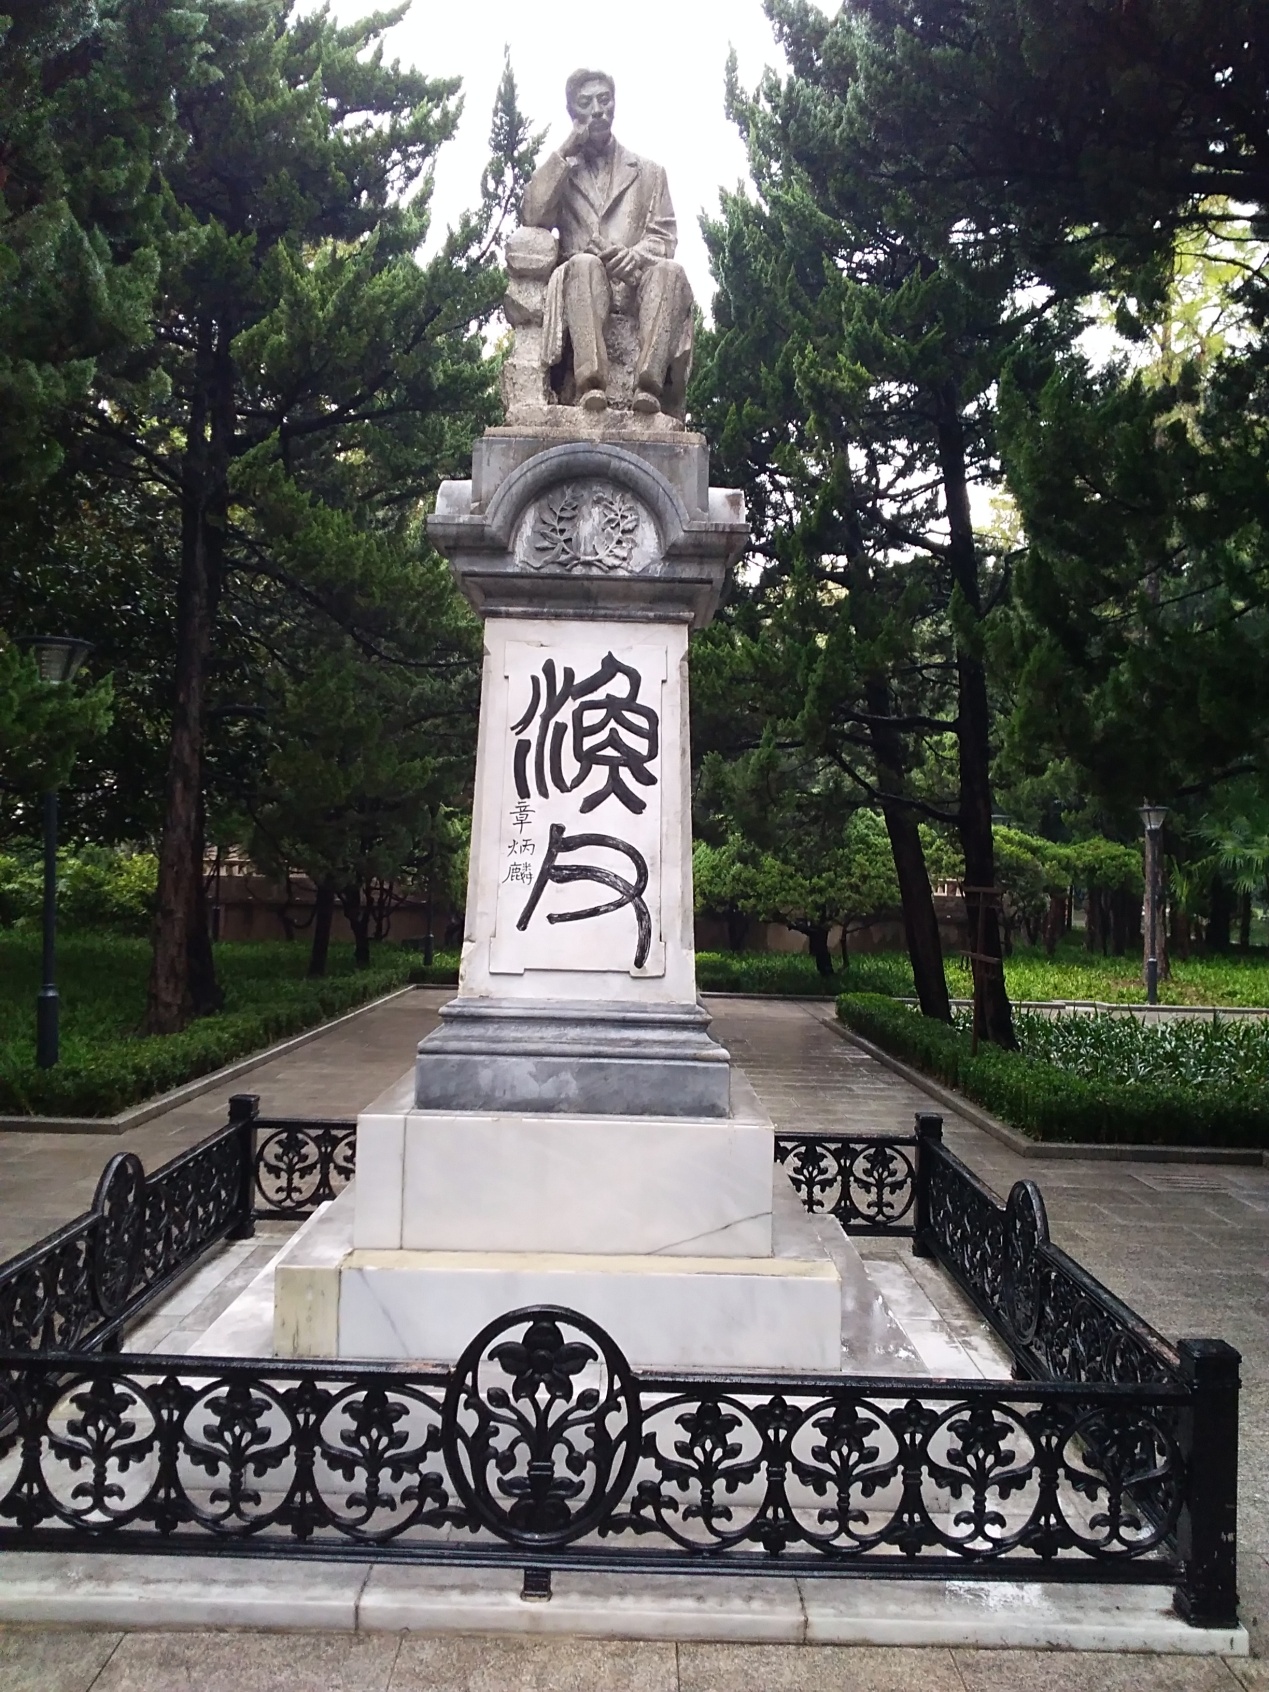 座落在上海市共和新路1555号教仁园的宋教仁墓,翠柏环抱,庄严肃穆;墓